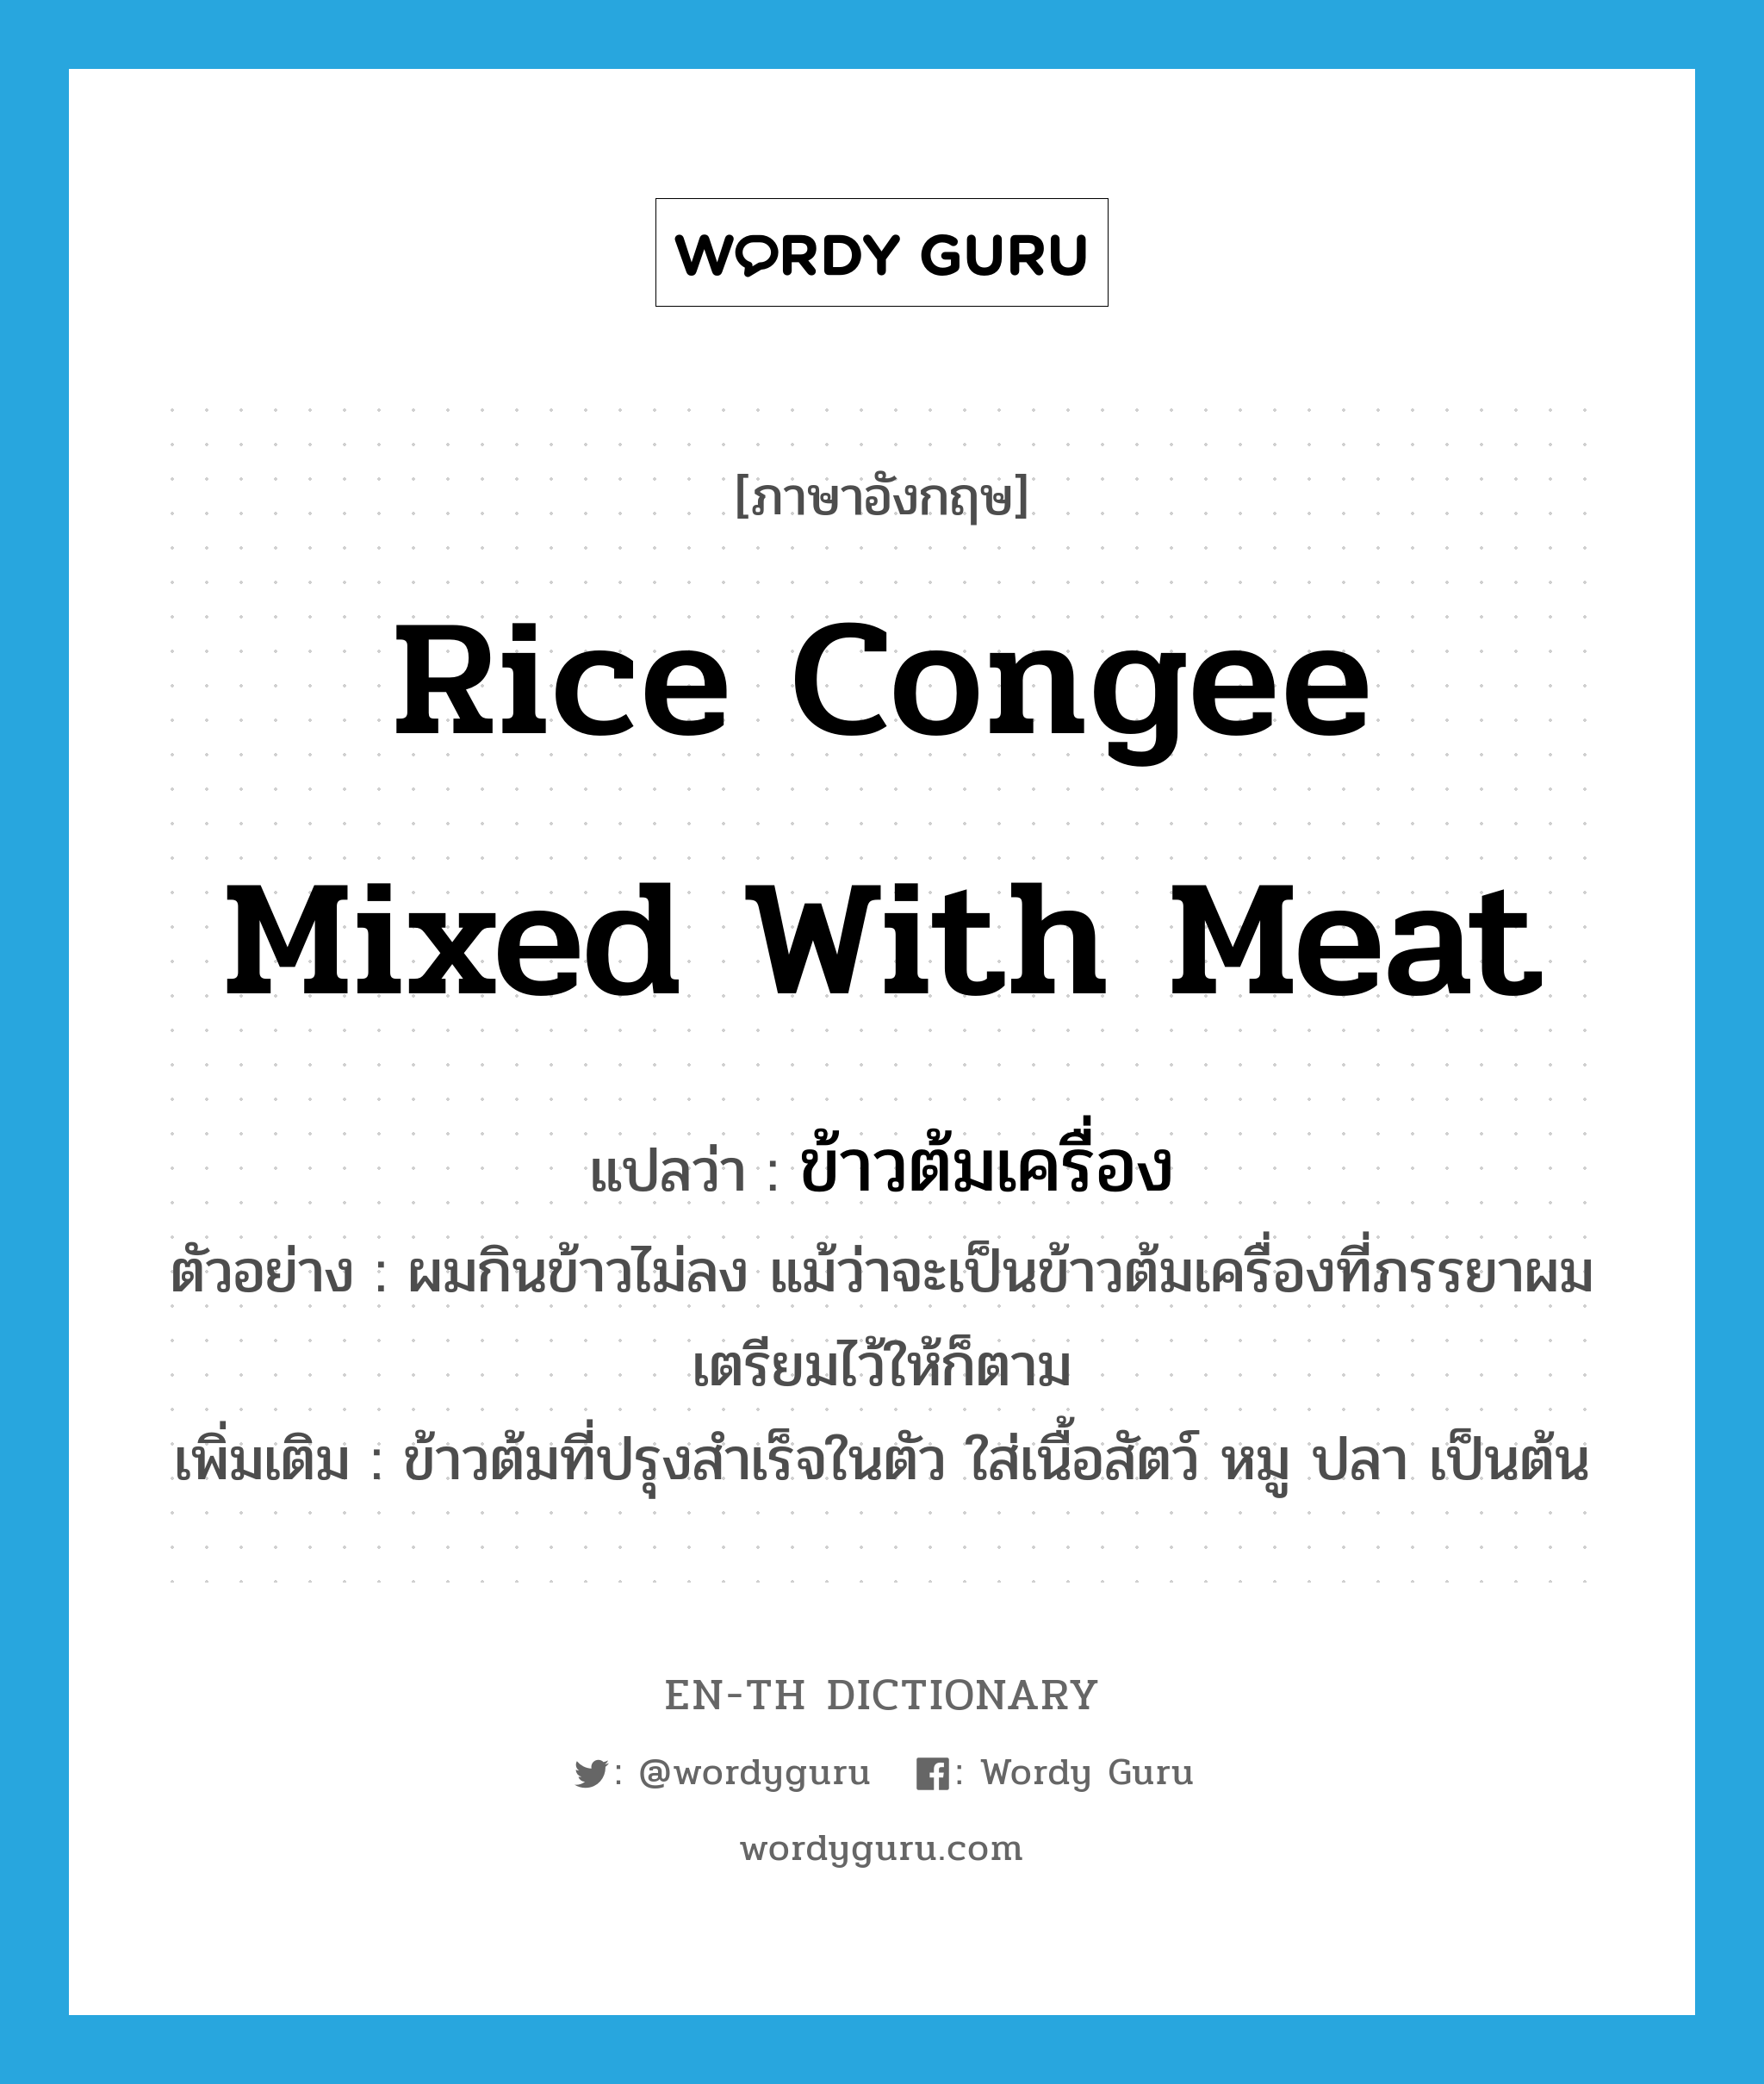 rice congee mixed with meat แปลว่า?, คำศัพท์ภาษาอังกฤษ rice congee mixed with meat แปลว่า ข้าวต้มเครื่อง ประเภท N ตัวอย่าง ผมกินข้าวไม่ลง แม้ว่าจะเป็นข้าวต้มเครื่องที่ภรรยาผมเตรียมไว้ให้ก็ตาม เพิ่มเติม ข้าวต้มที่ปรุงสำเร็จในตัว ใส่เนื้อสัตว์ หมู ปลา เป็นต้น หมวด N